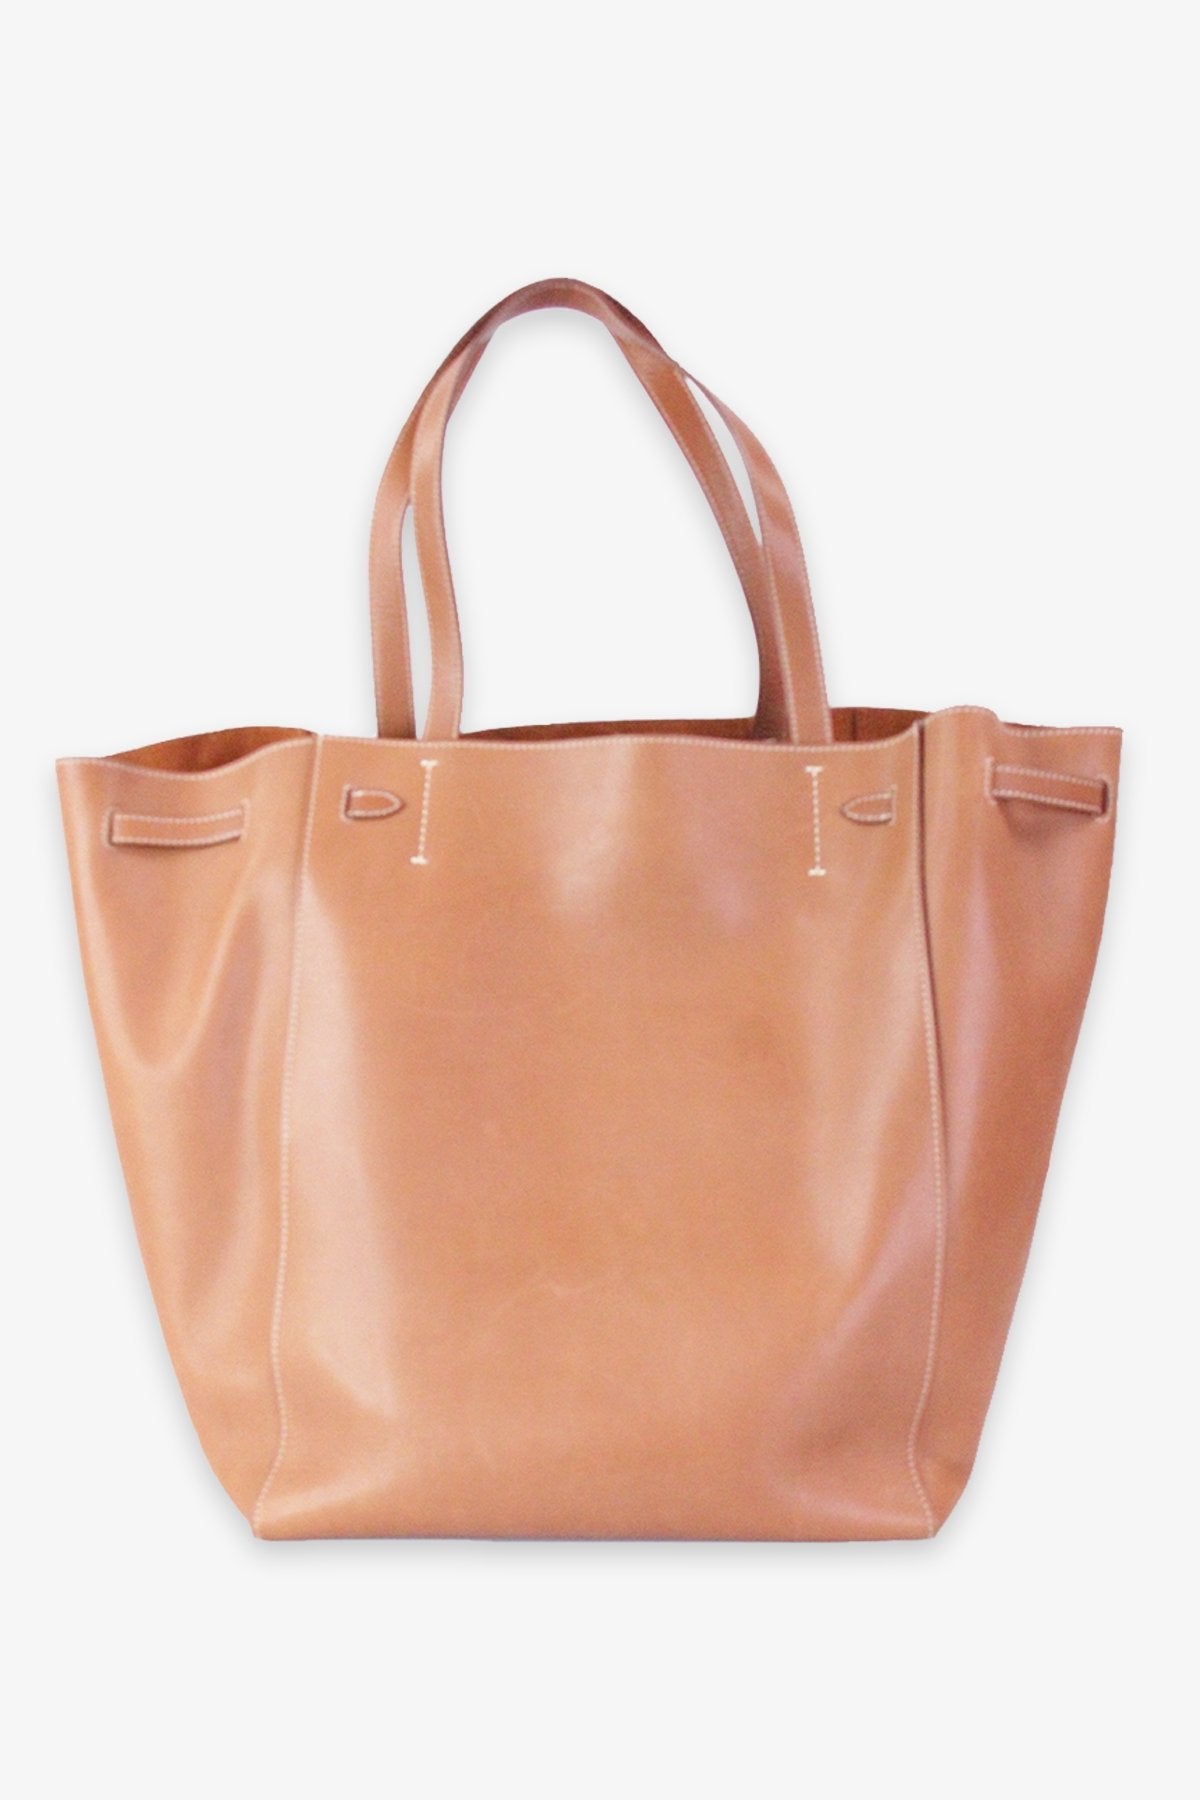 Celine Brown Large Tote Bag - shop-olivia.com